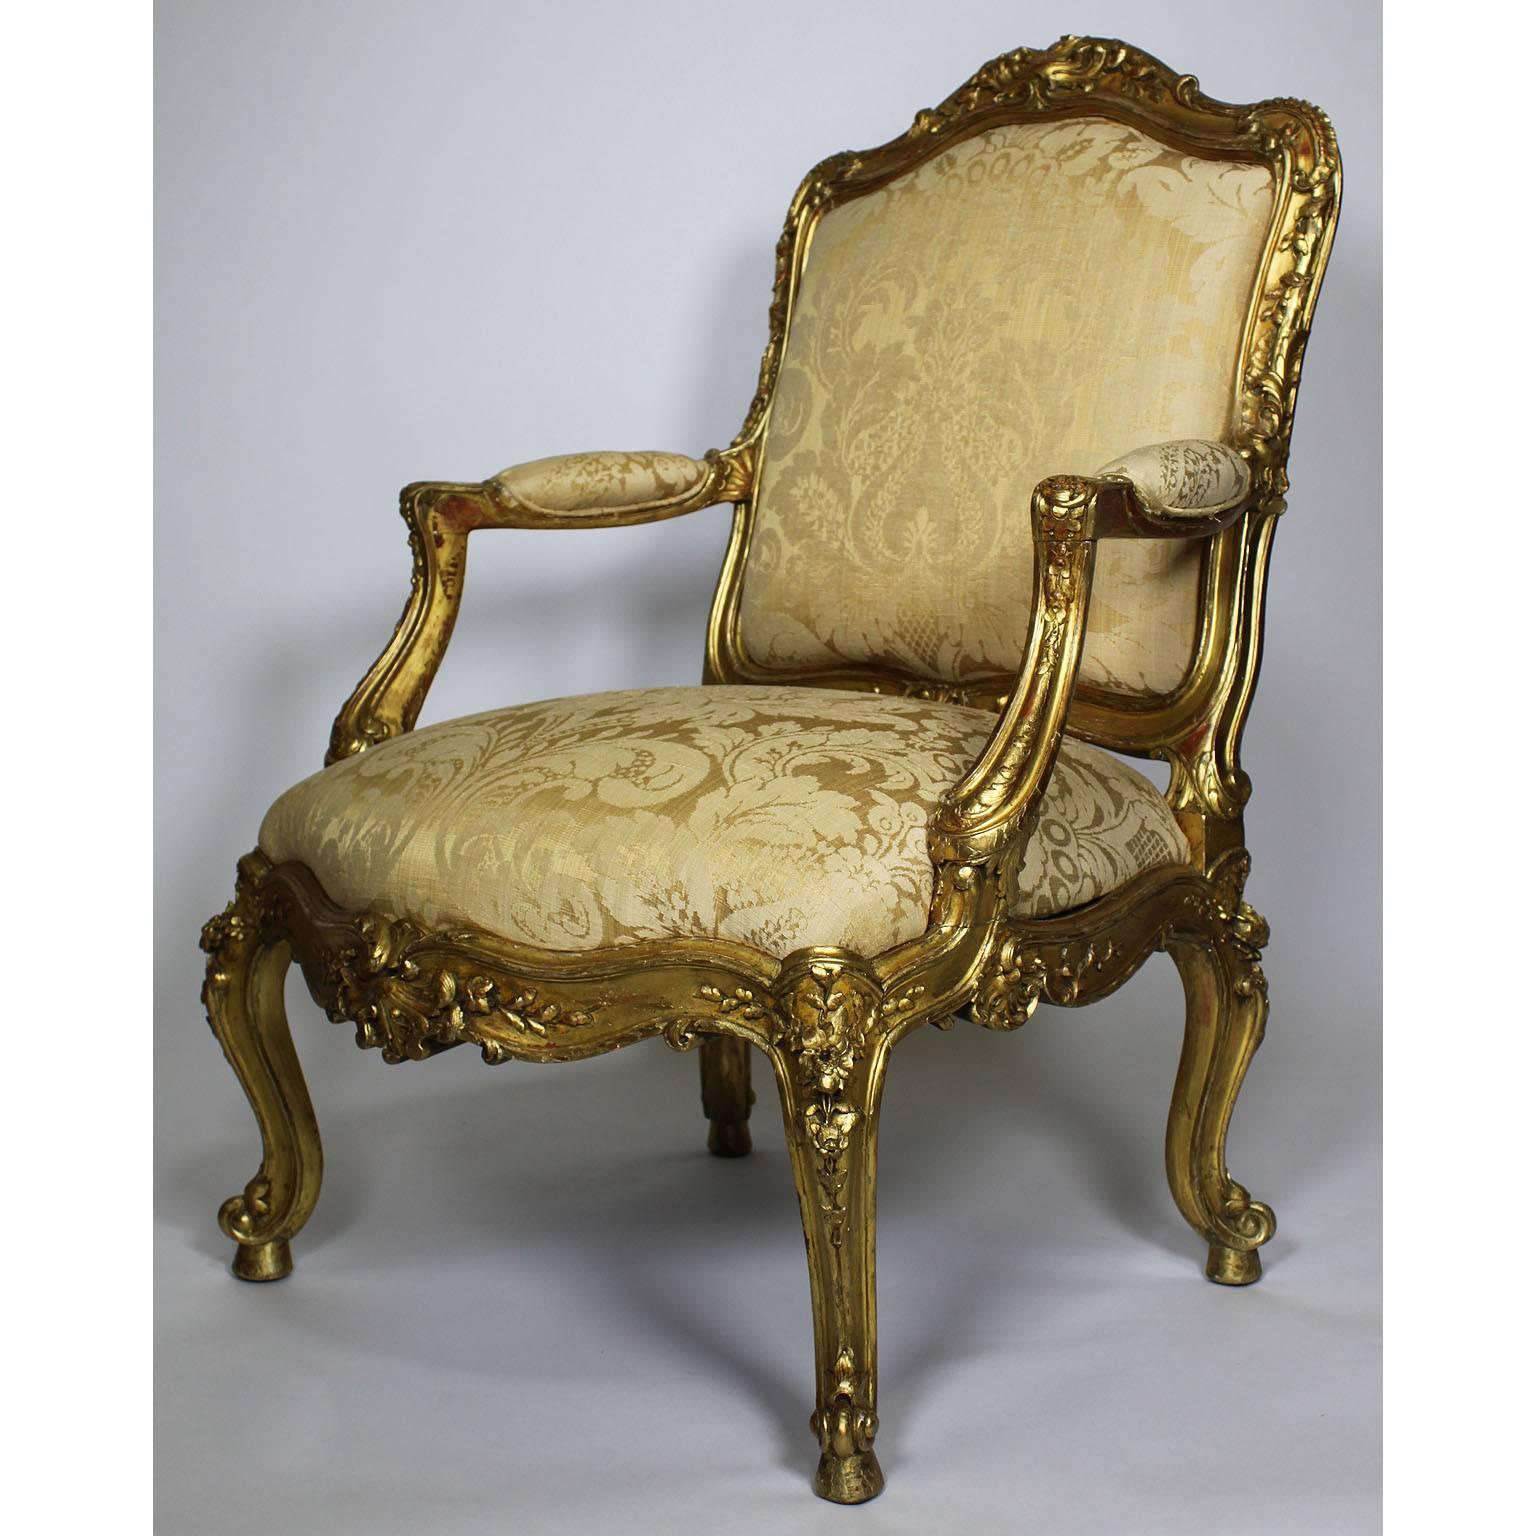 Paire de fauteuils de style rococo italien du 19e siècle en bois doré sculpté ; les dossiers rembourrés en forme d'arc avec des crêtes en forme de volutes et des bordures similaires, ayant des supports d'accoudoirs rembourrés au-dessus d'un siège à